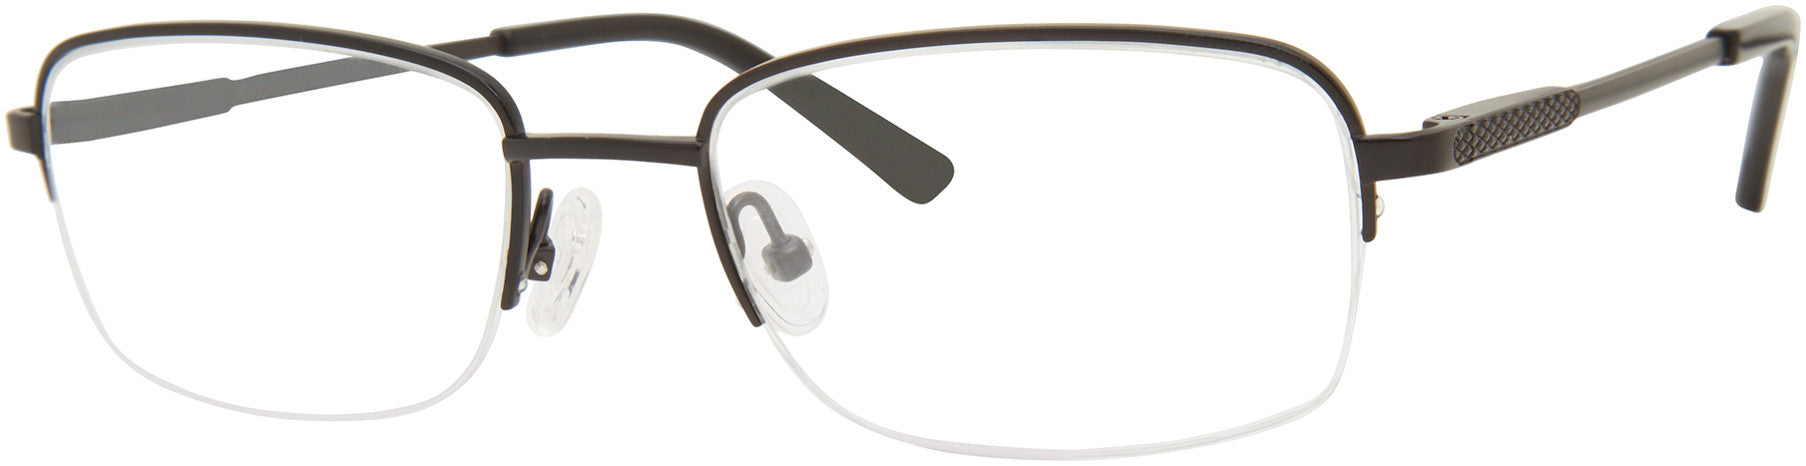  Chesterfield 891/T Rectangular Eyeglasses 0003-0003  Matte Black (00 Demo Lens)